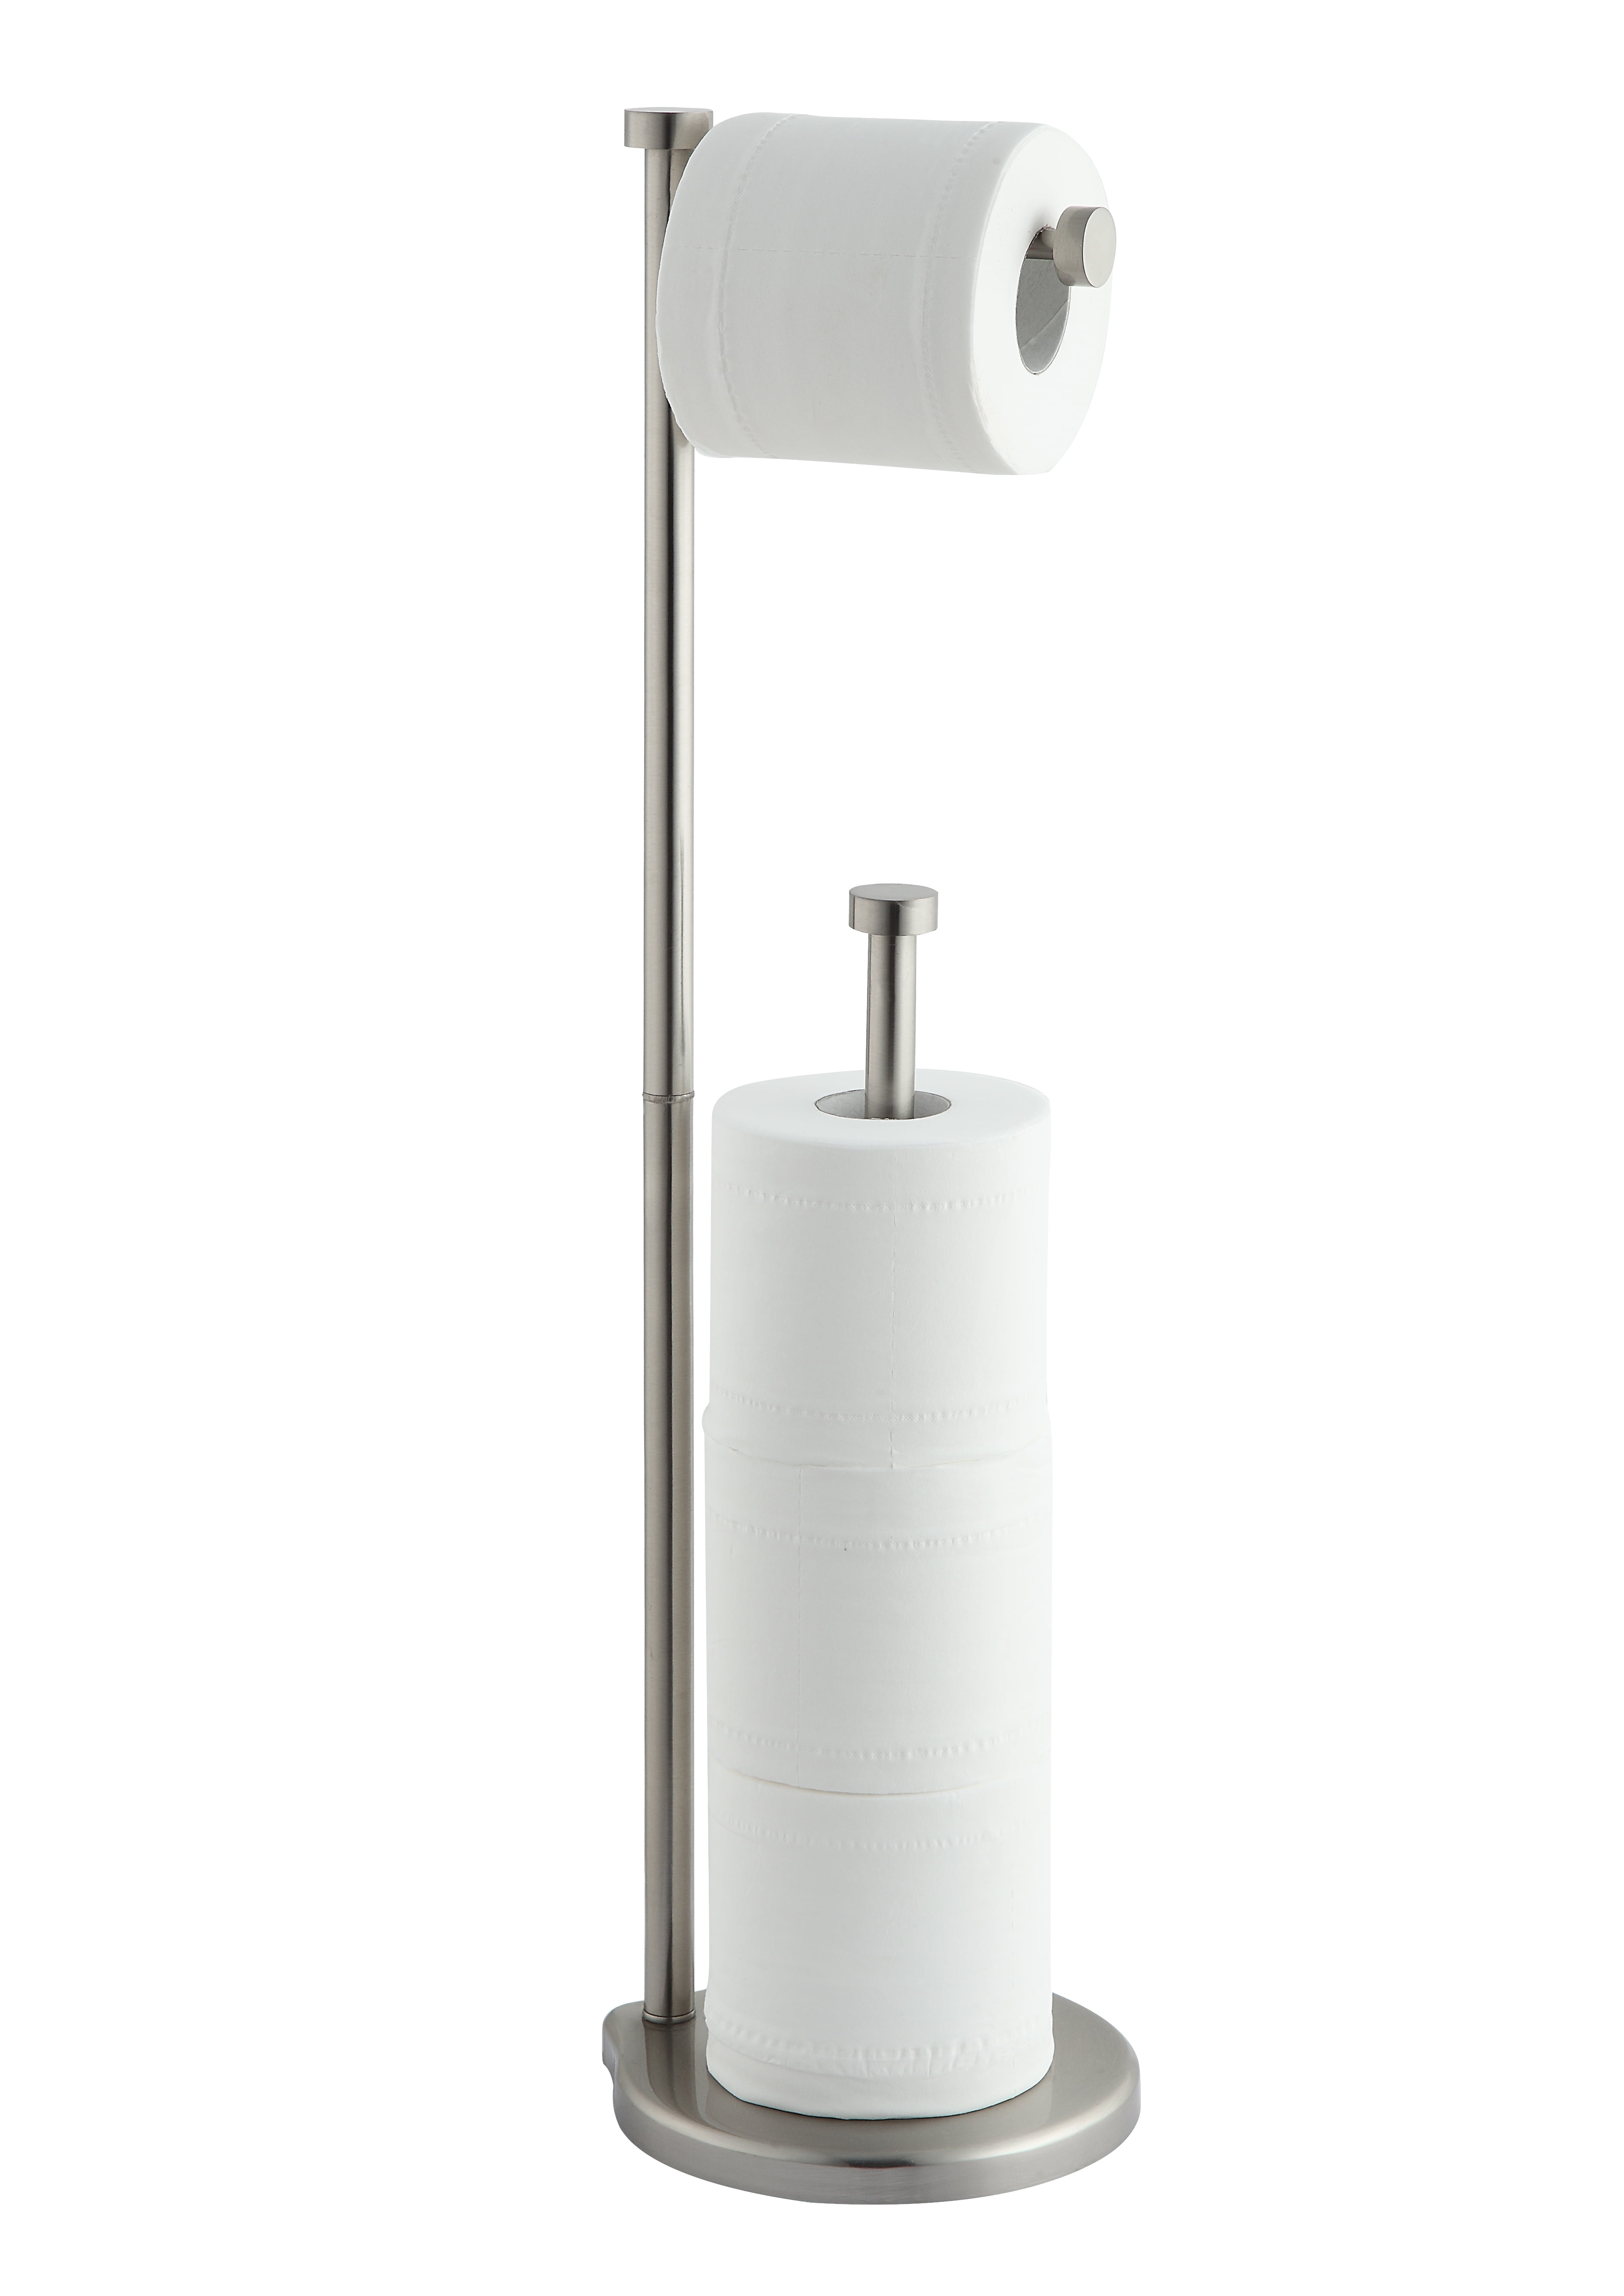 New Chrome Free Stand Toilet Brush & Roll Holder Home Office Restaurant Bathroom 